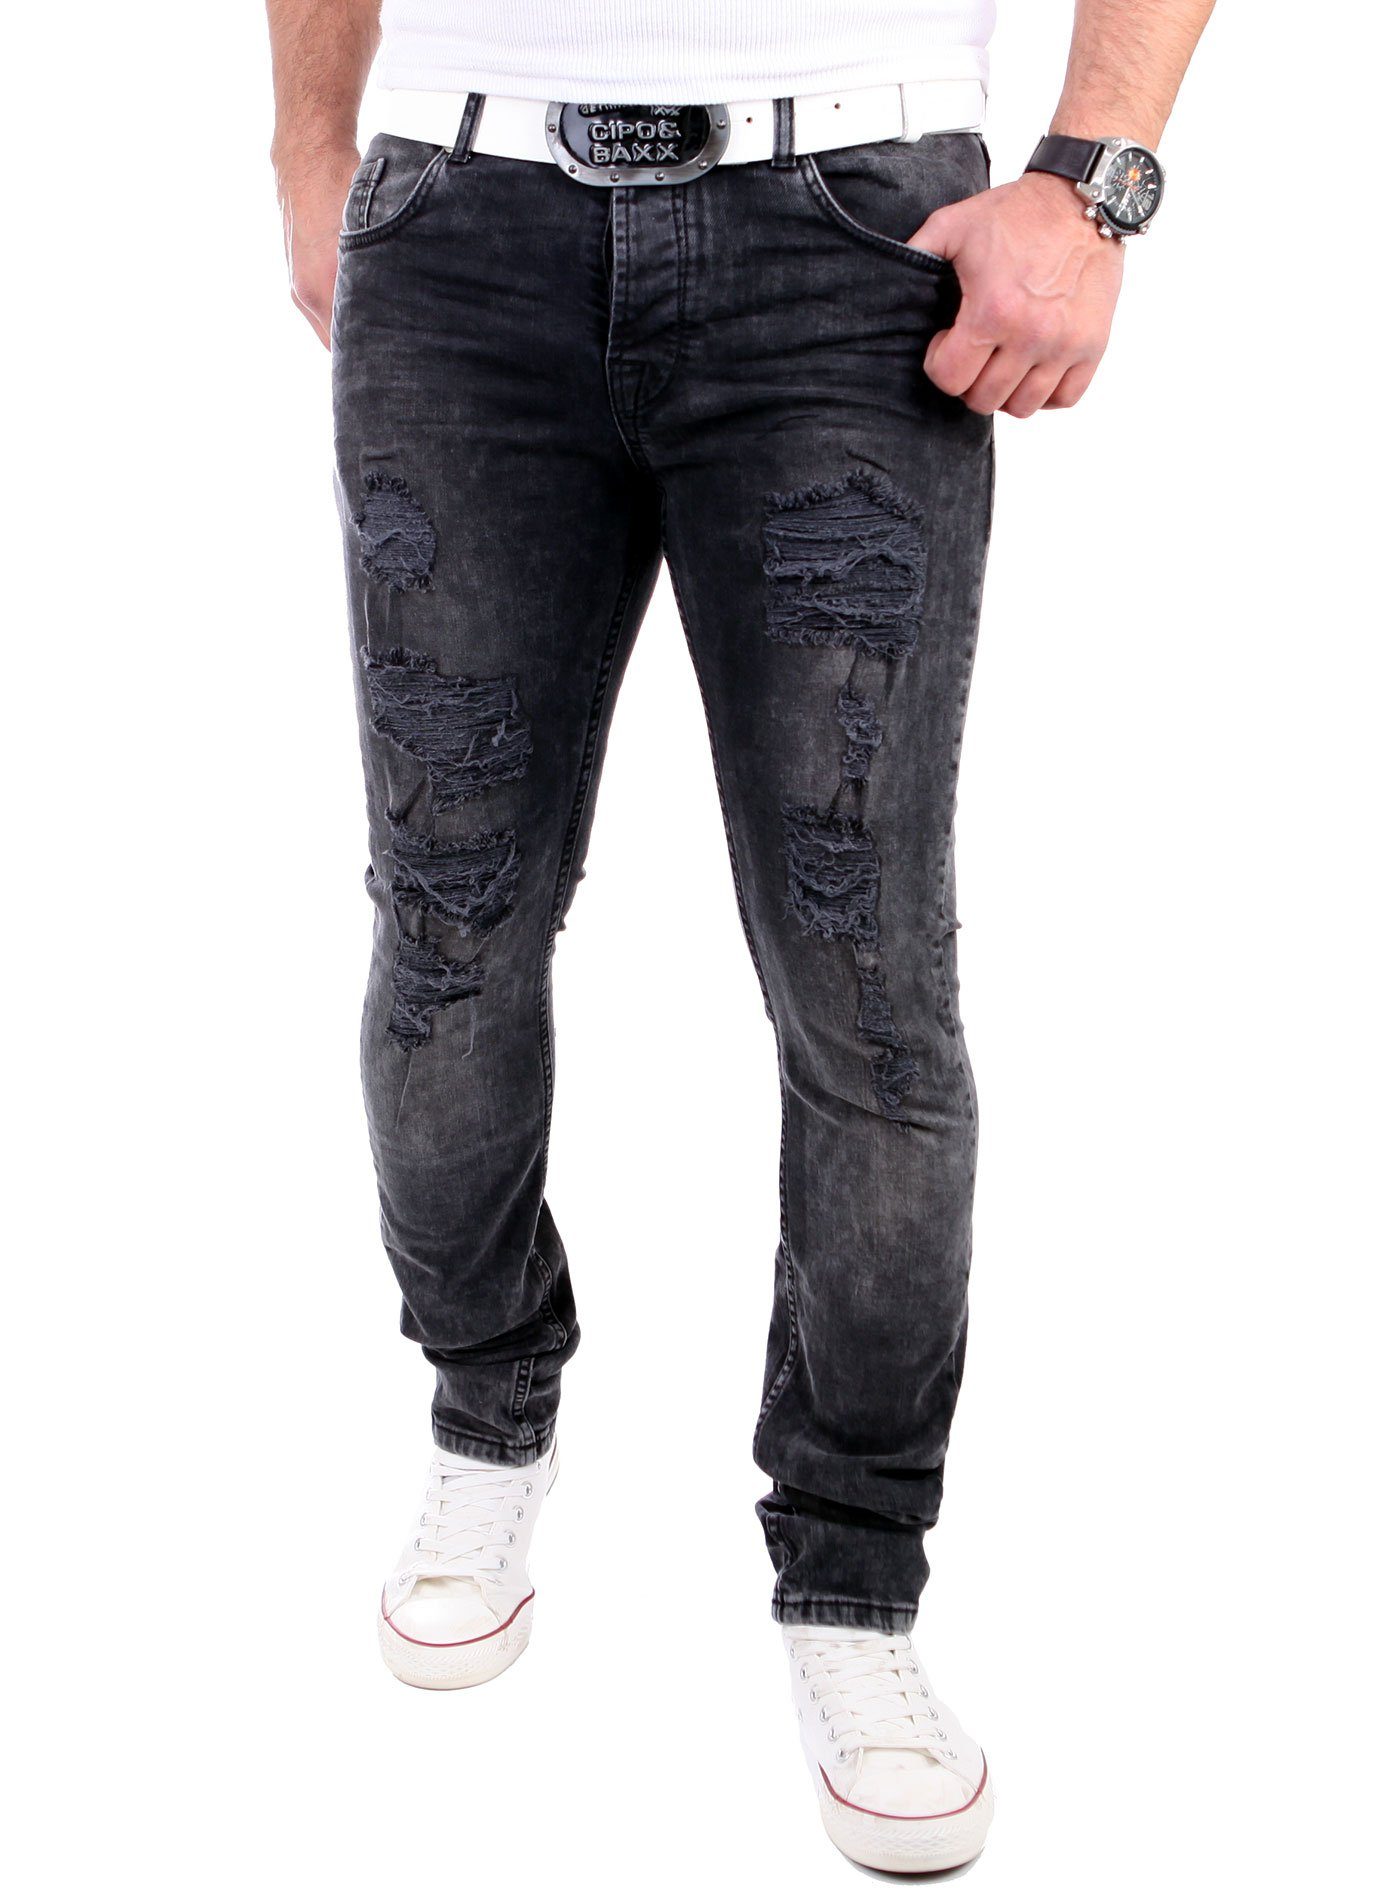 Männer-Hose Destroyed-Jeans Jeans Heavy Herren Keno Destroyed Rock Look Fit Jeans Destroyed Slim VSCT VSCT